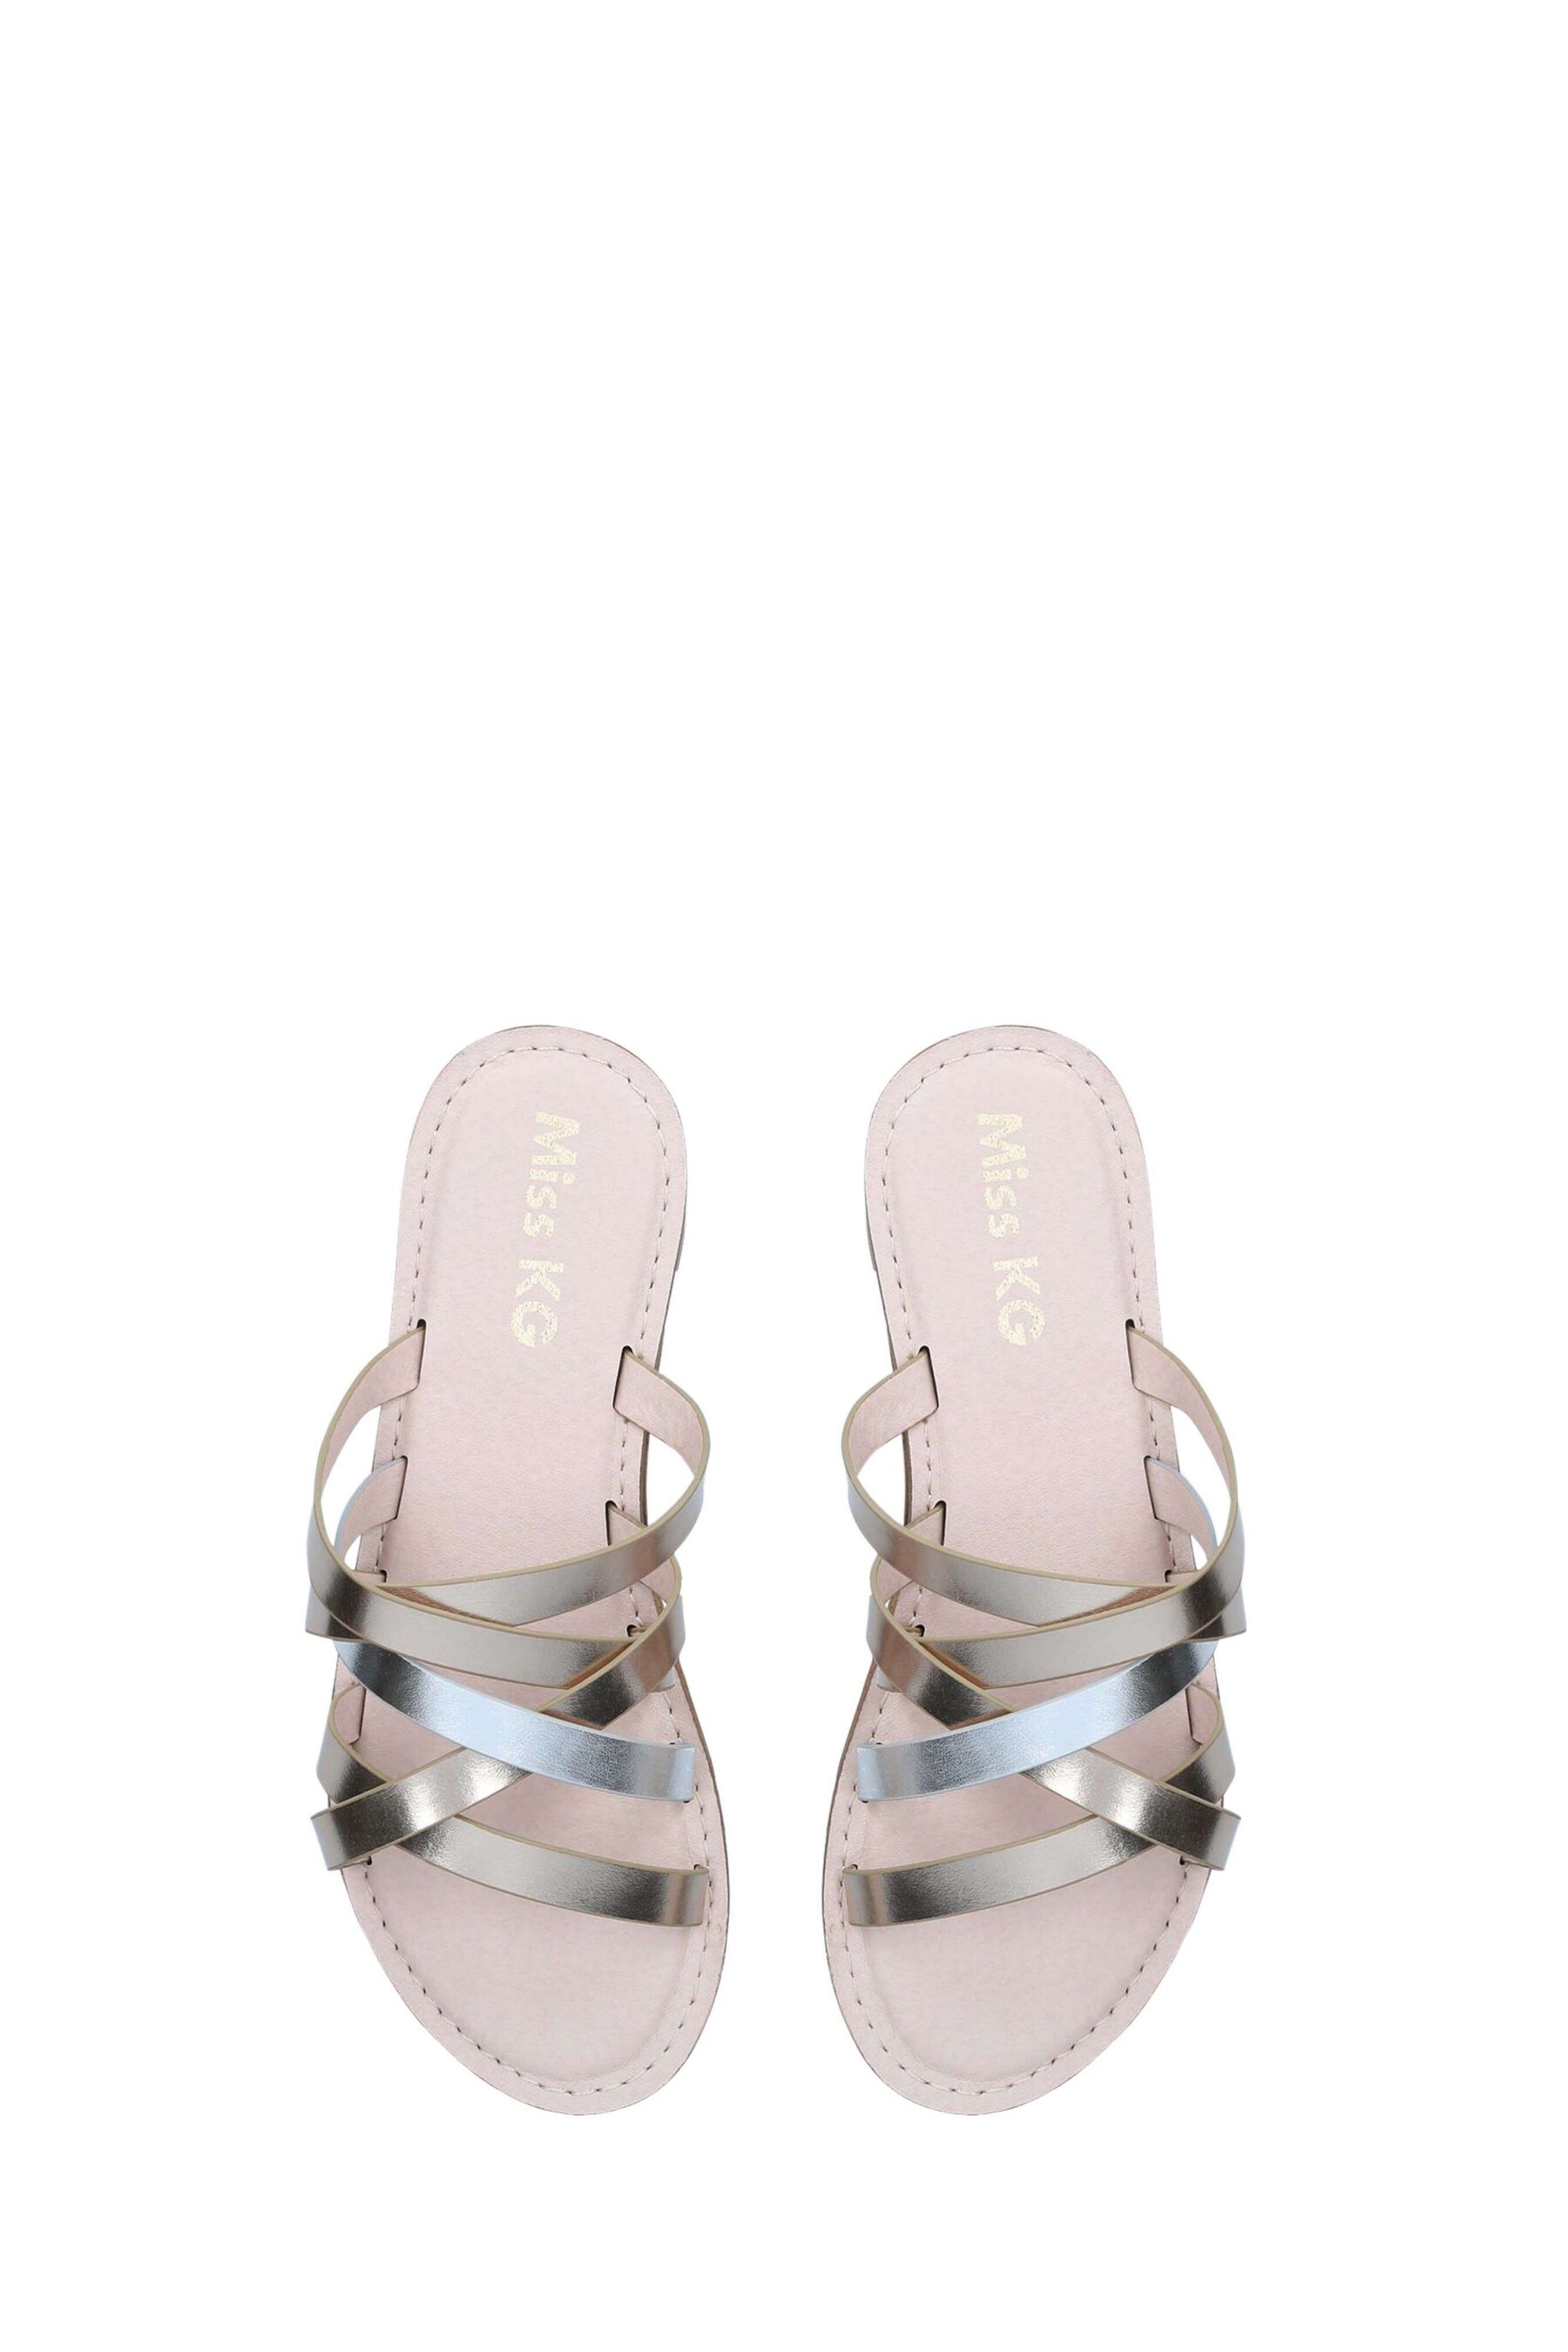 Buy Miss KG Gold Denver Sandals from the Next UK online shop